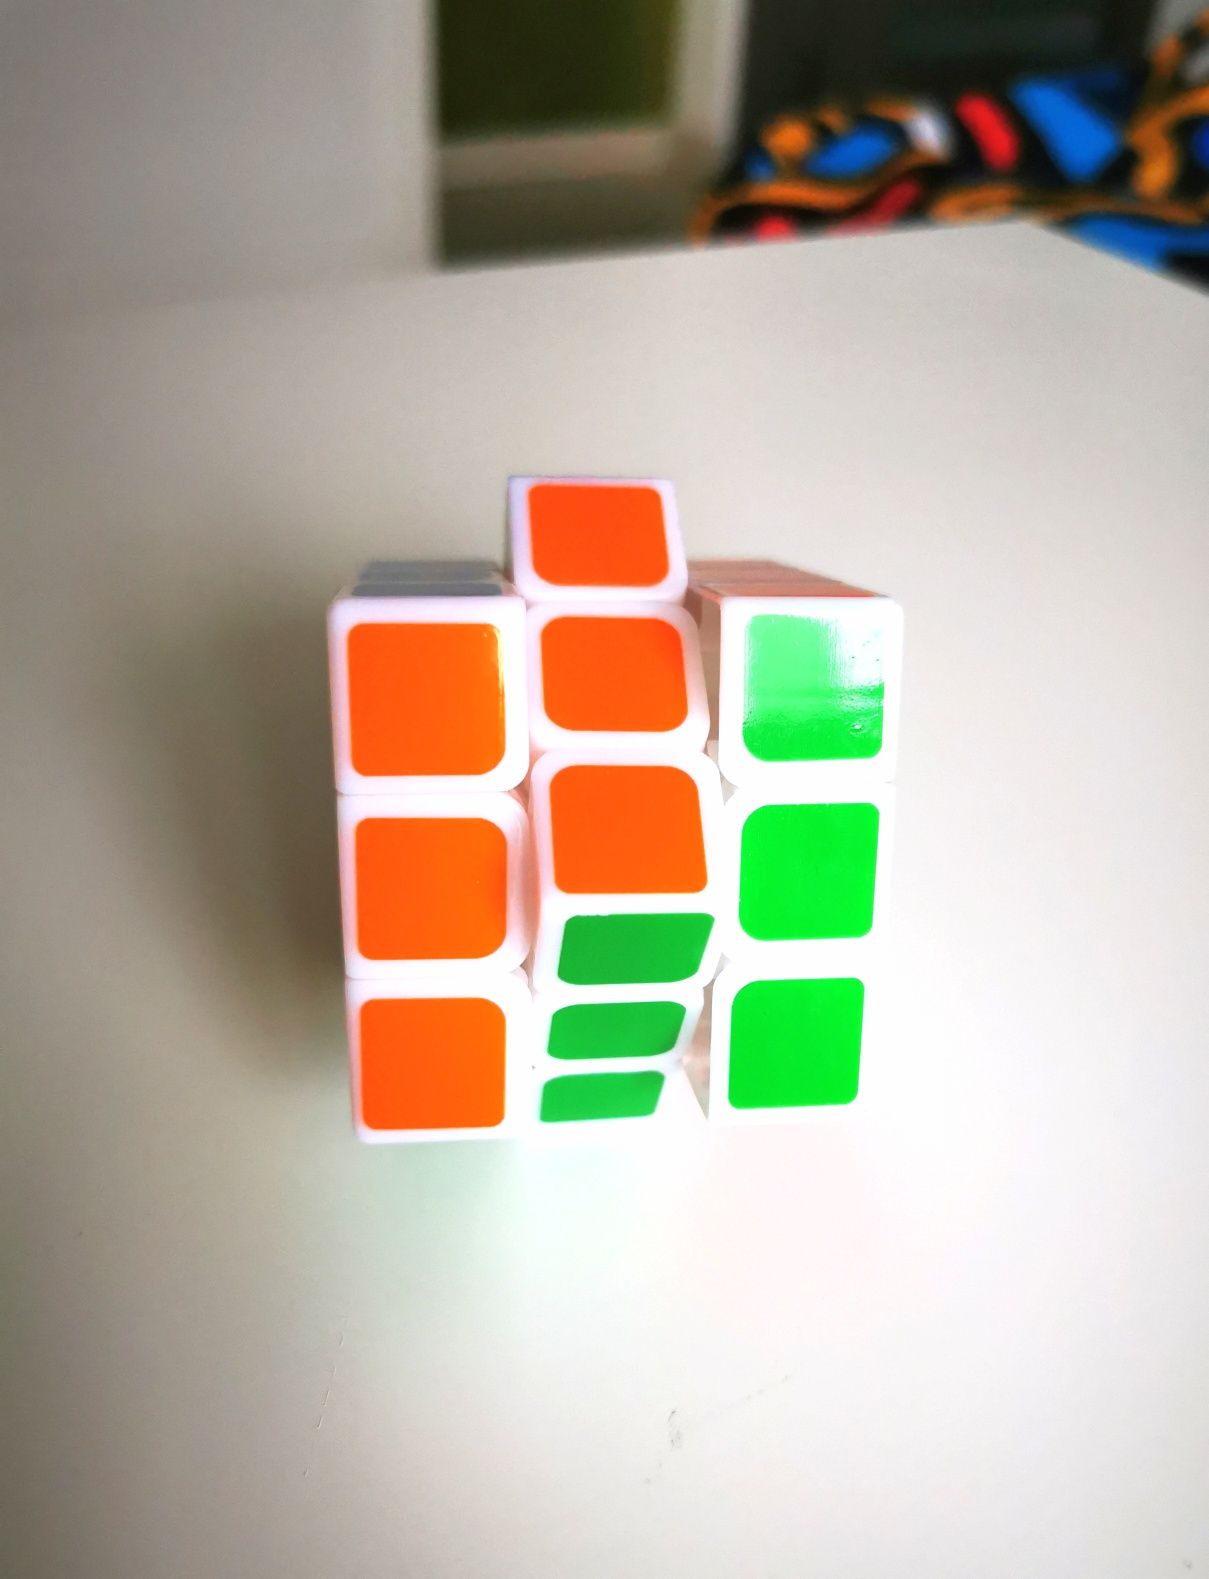 Cub Rubik 3x3x3 nou